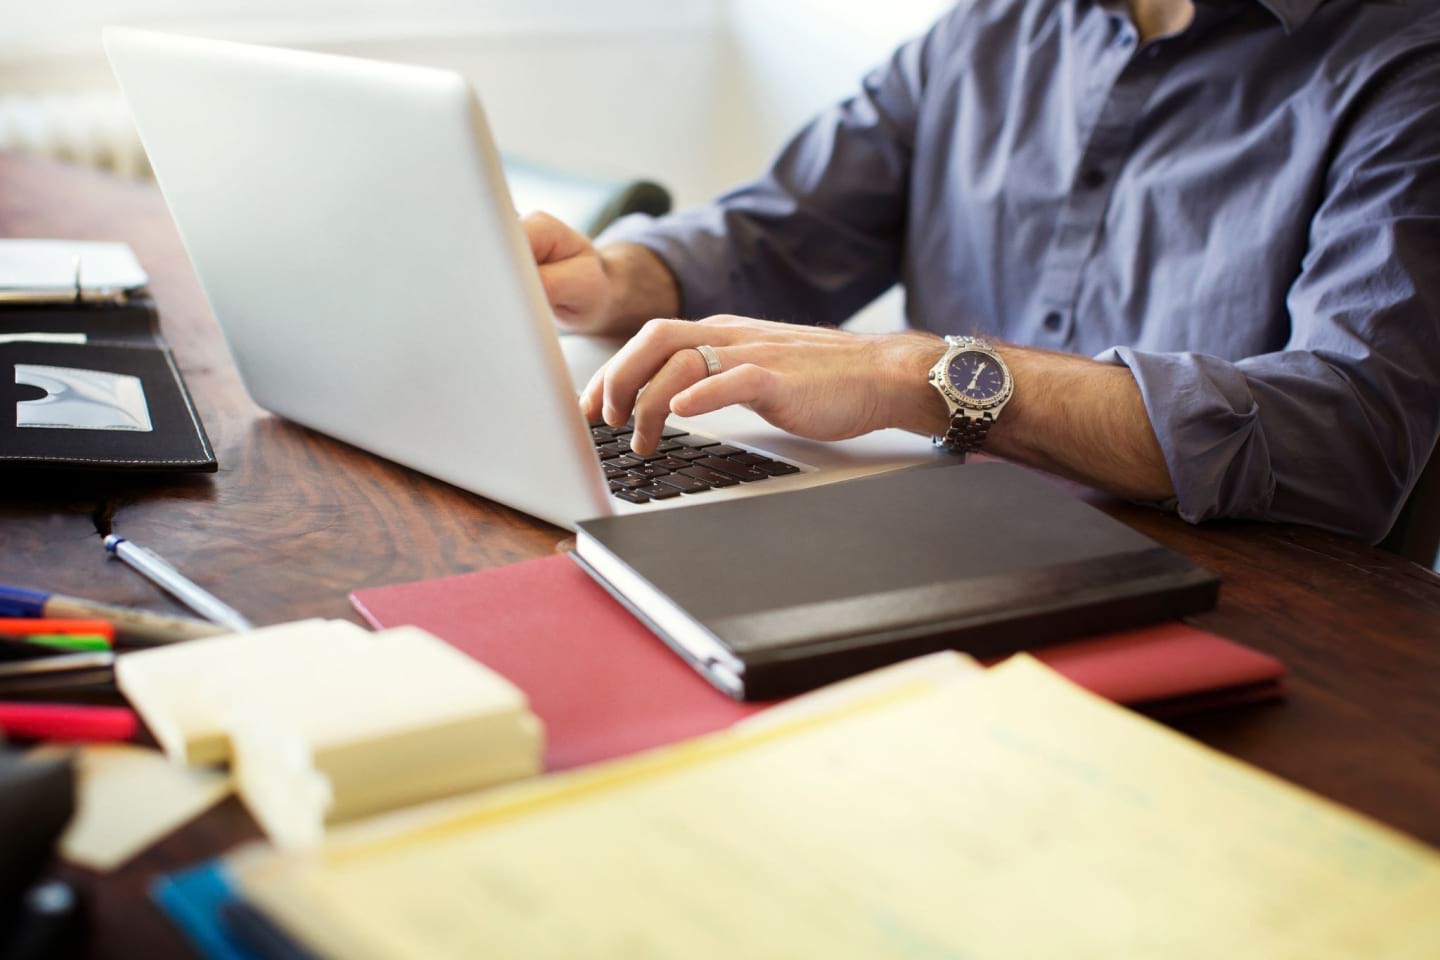 Una persona trabaja en una computadora portátil en un escritorio con bolígrafos, post-its y cuadernos.